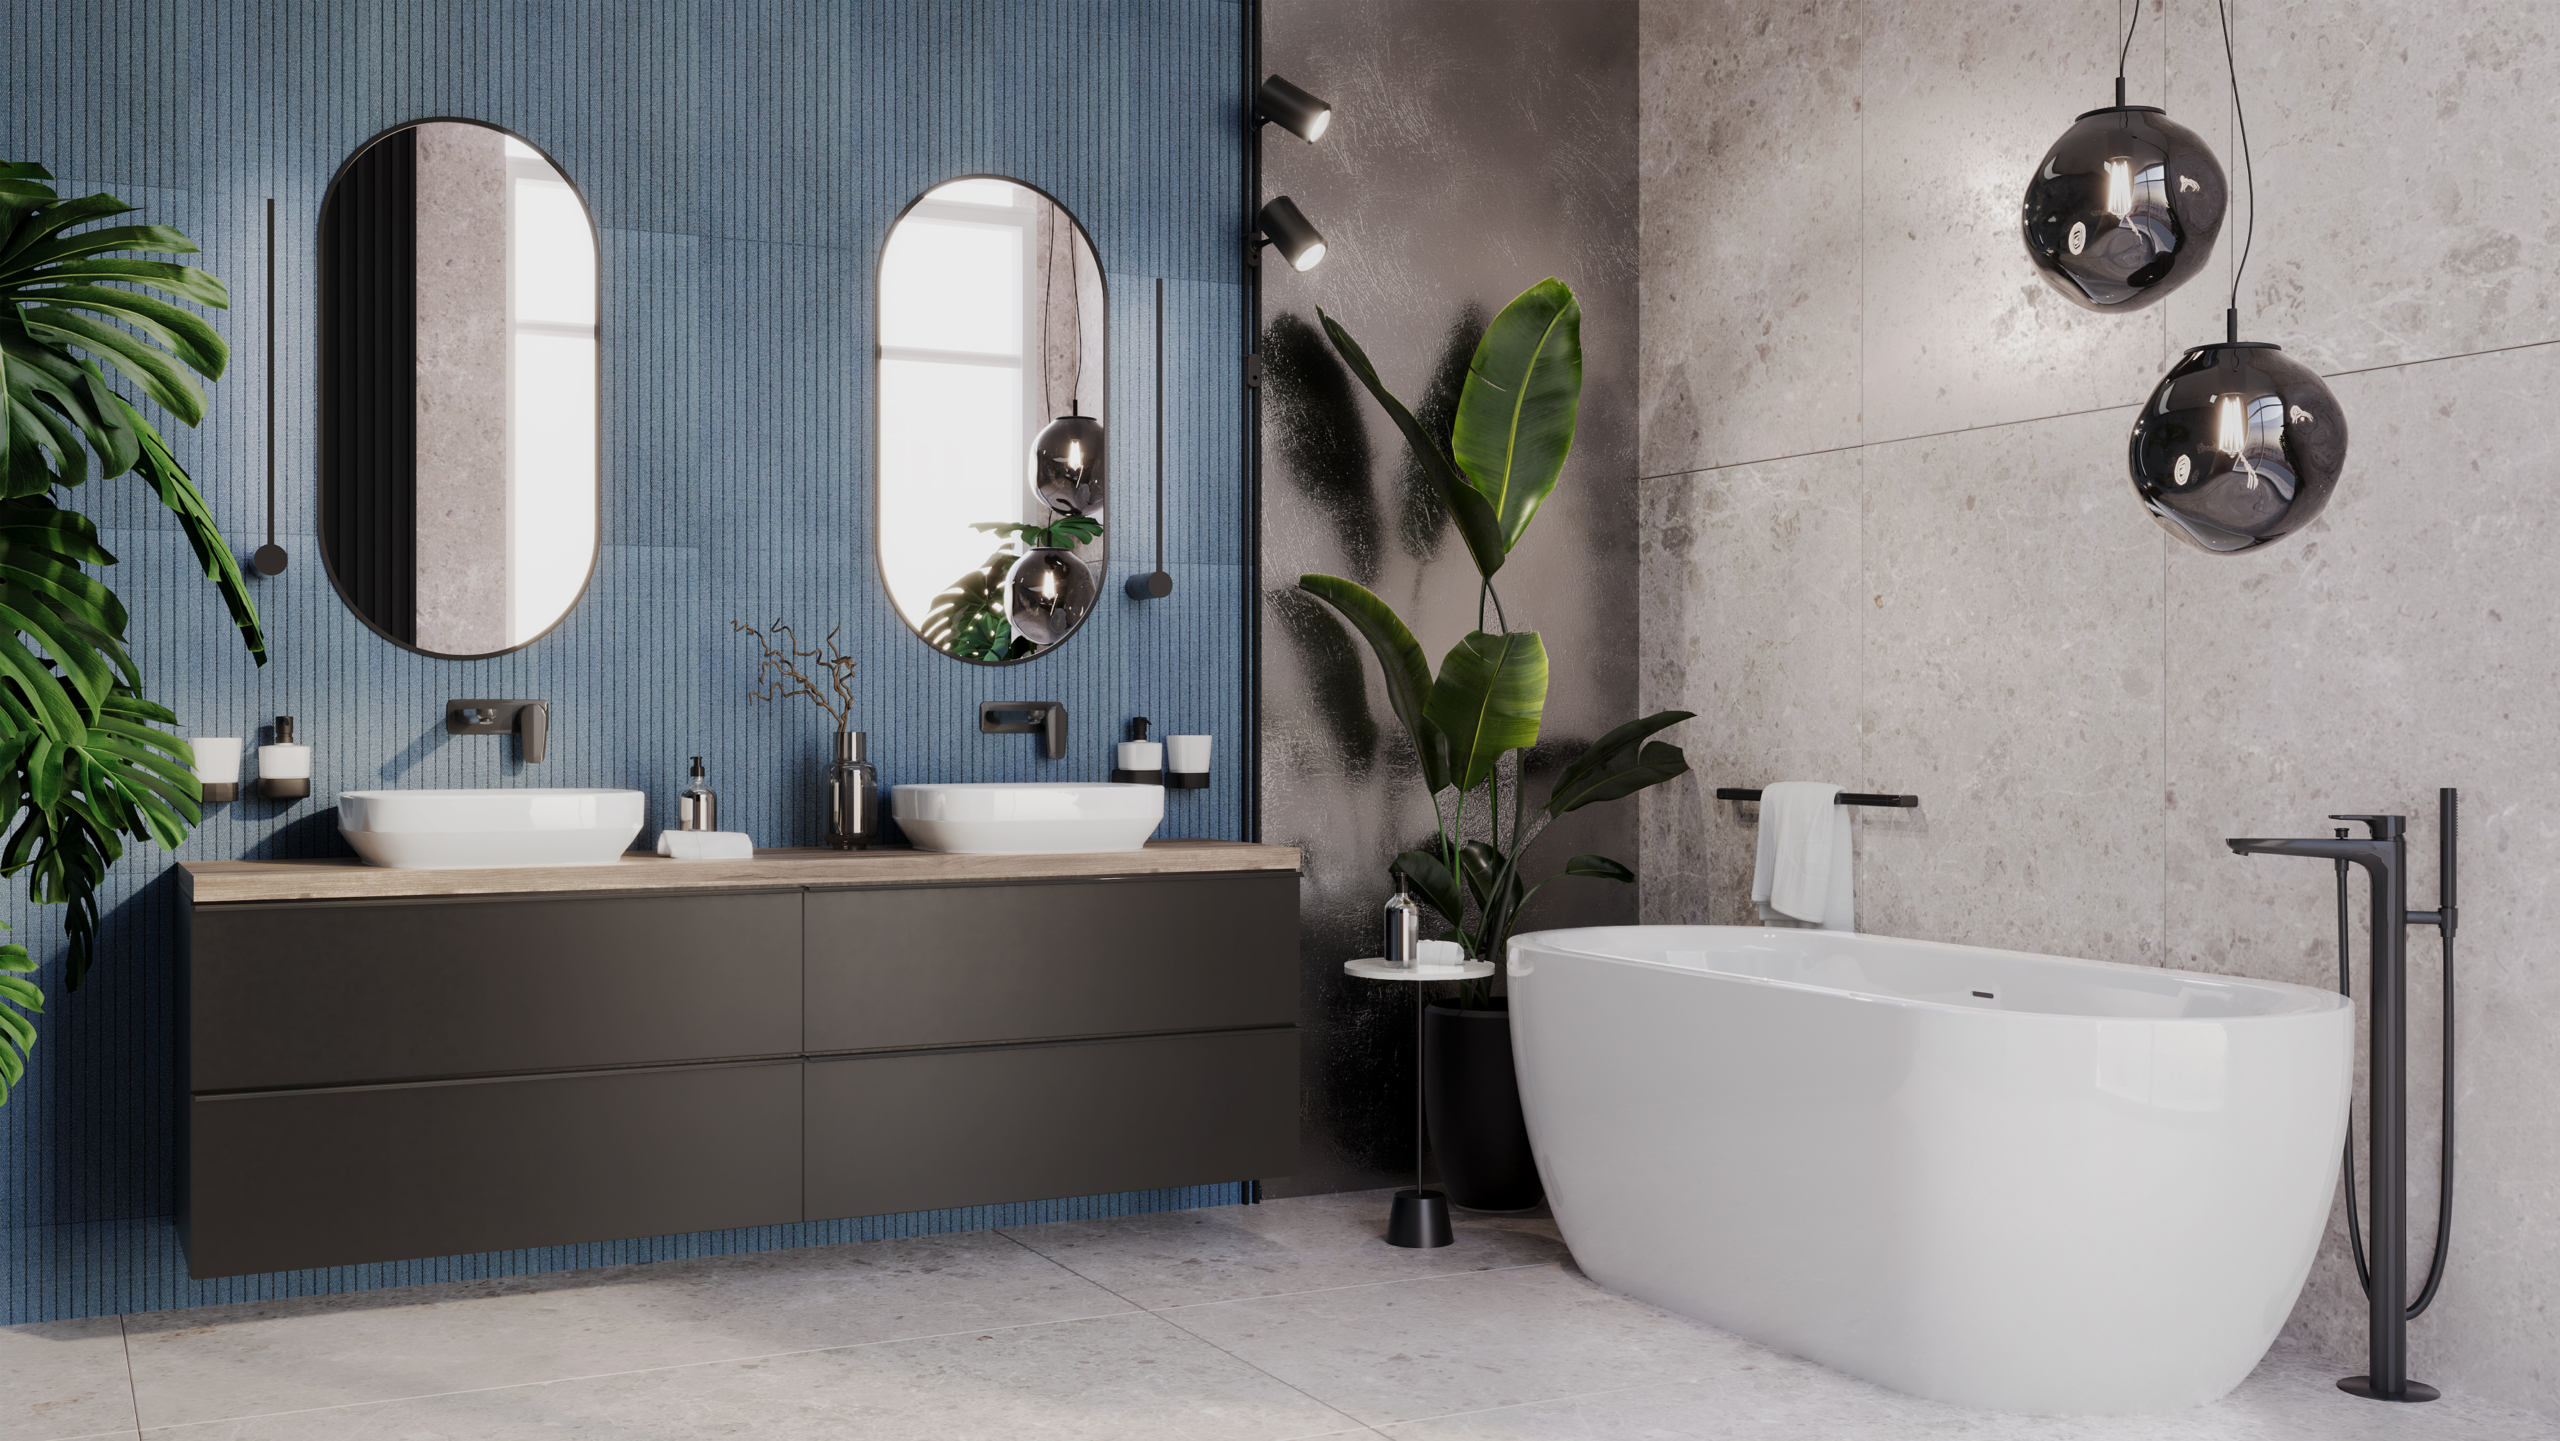 Fotorealistyczna wizualziacja łazienki w programie 3ds Max i Corona